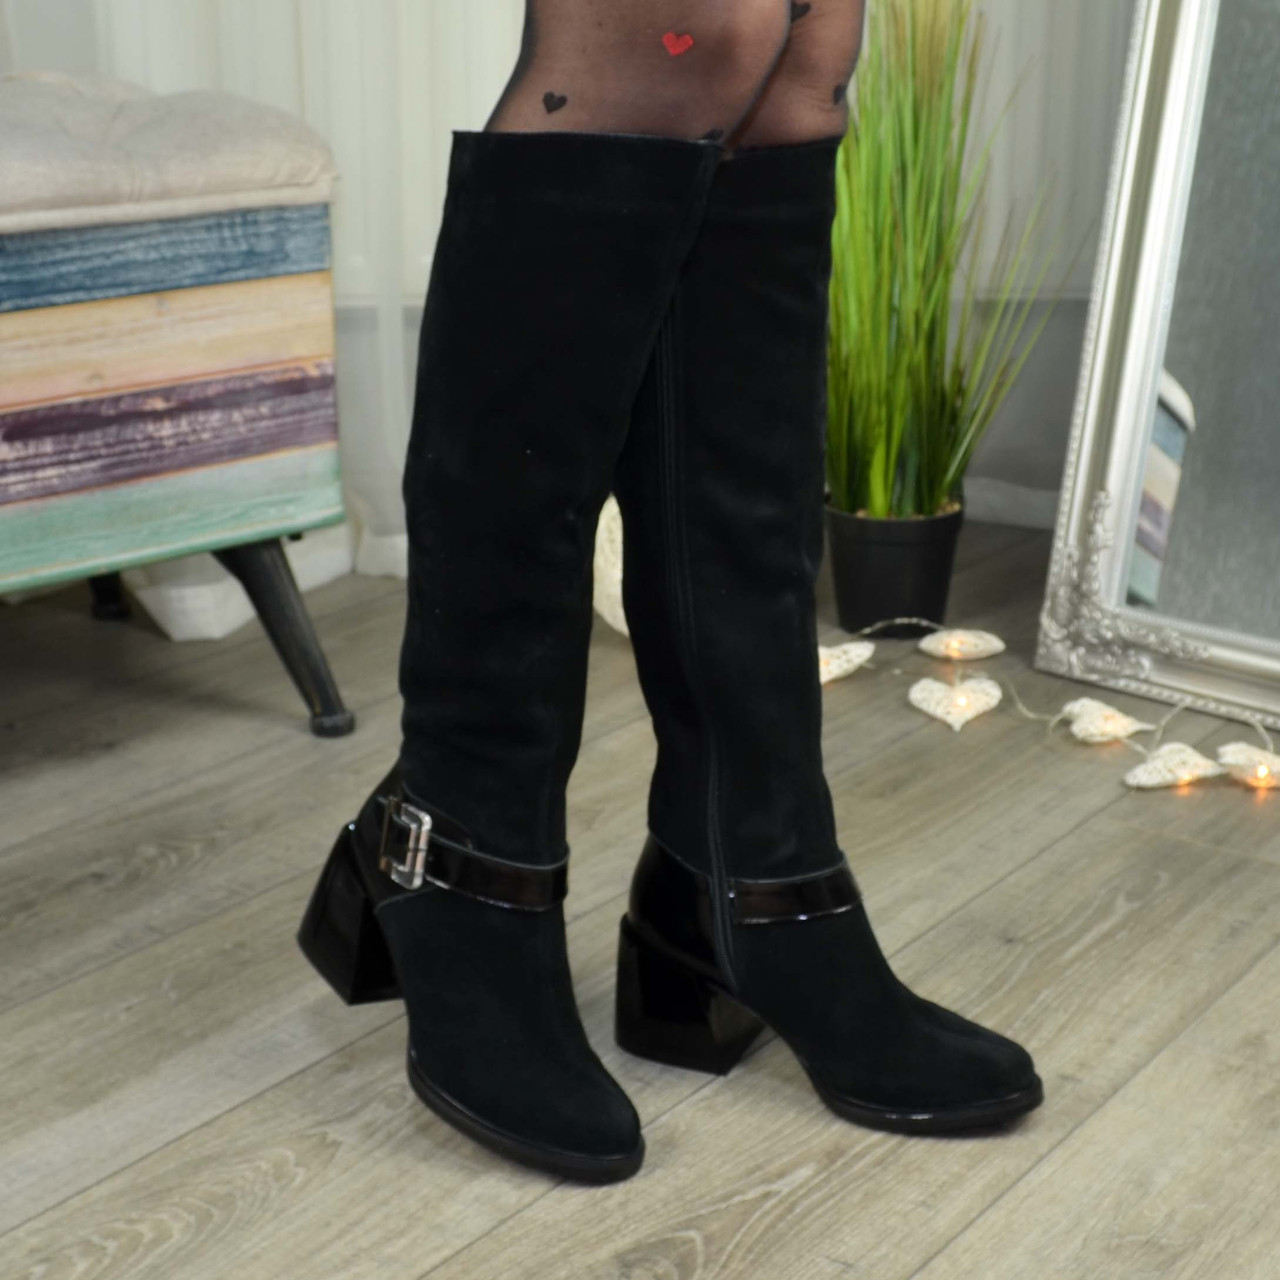 Высокие черные женские сапоги на каблуке. Натуральная замша и лаковая кожа